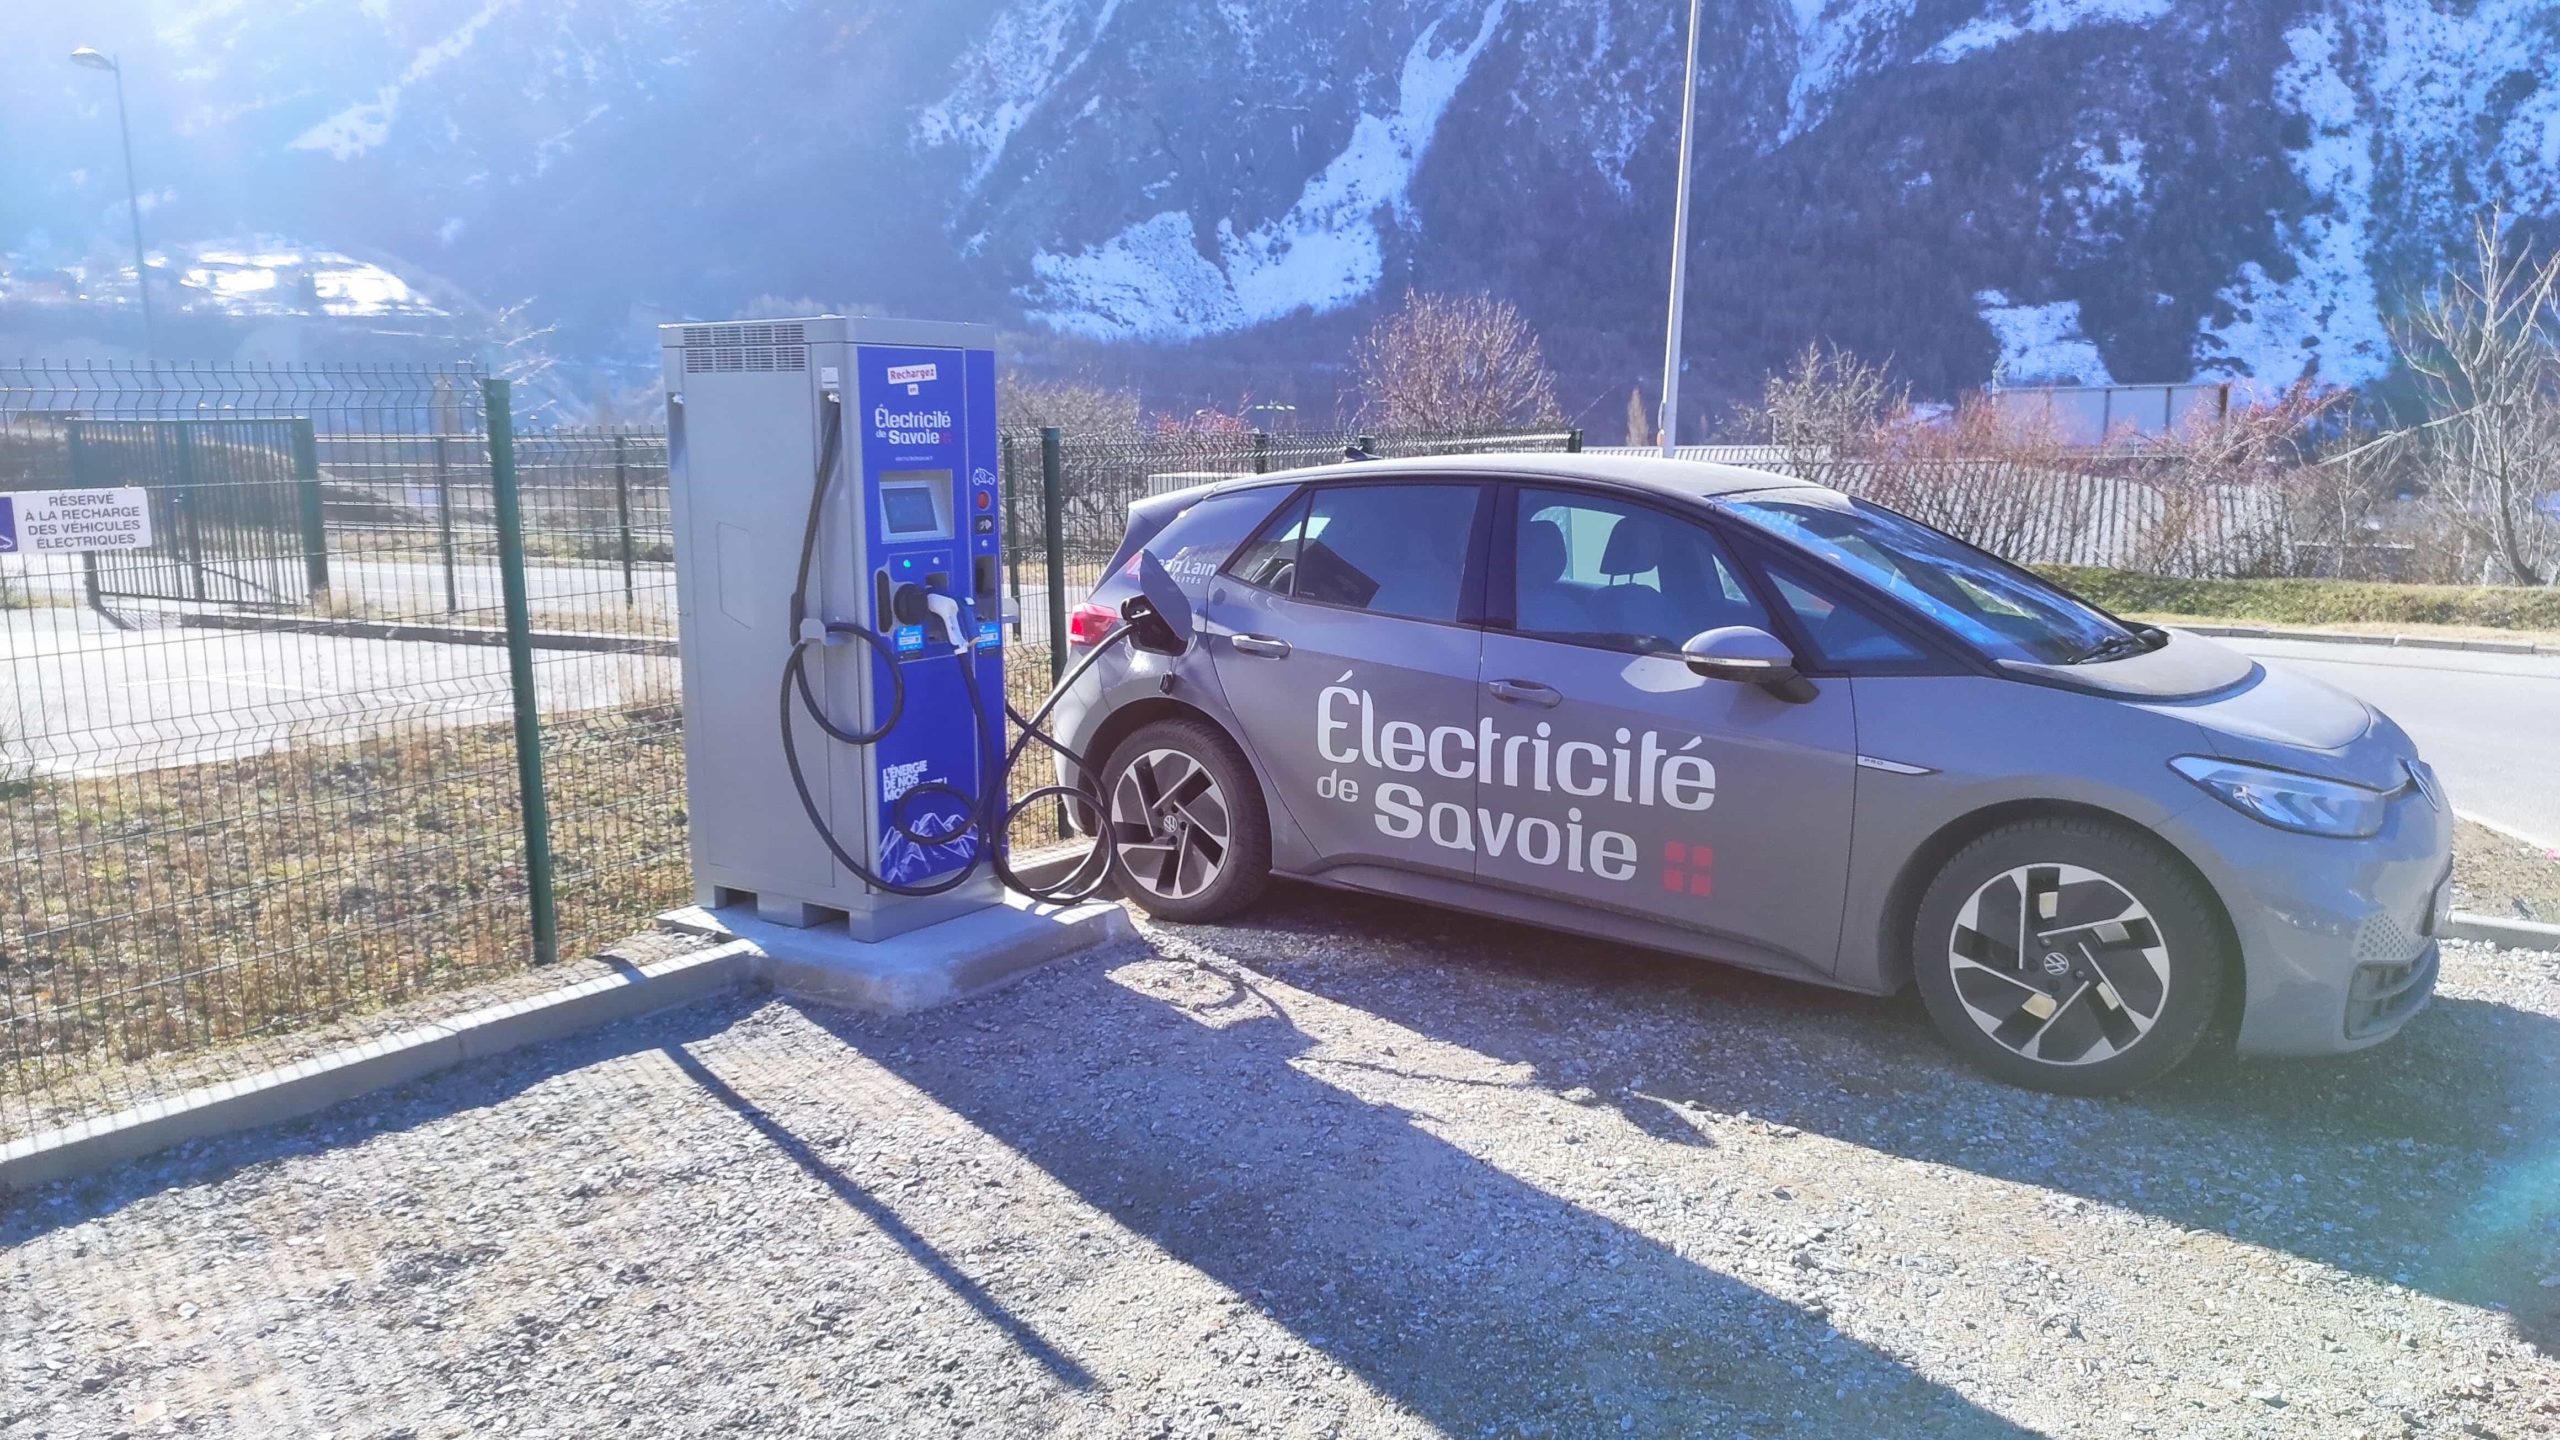 Les bornes de recharge électrique Electricité de Savoie !